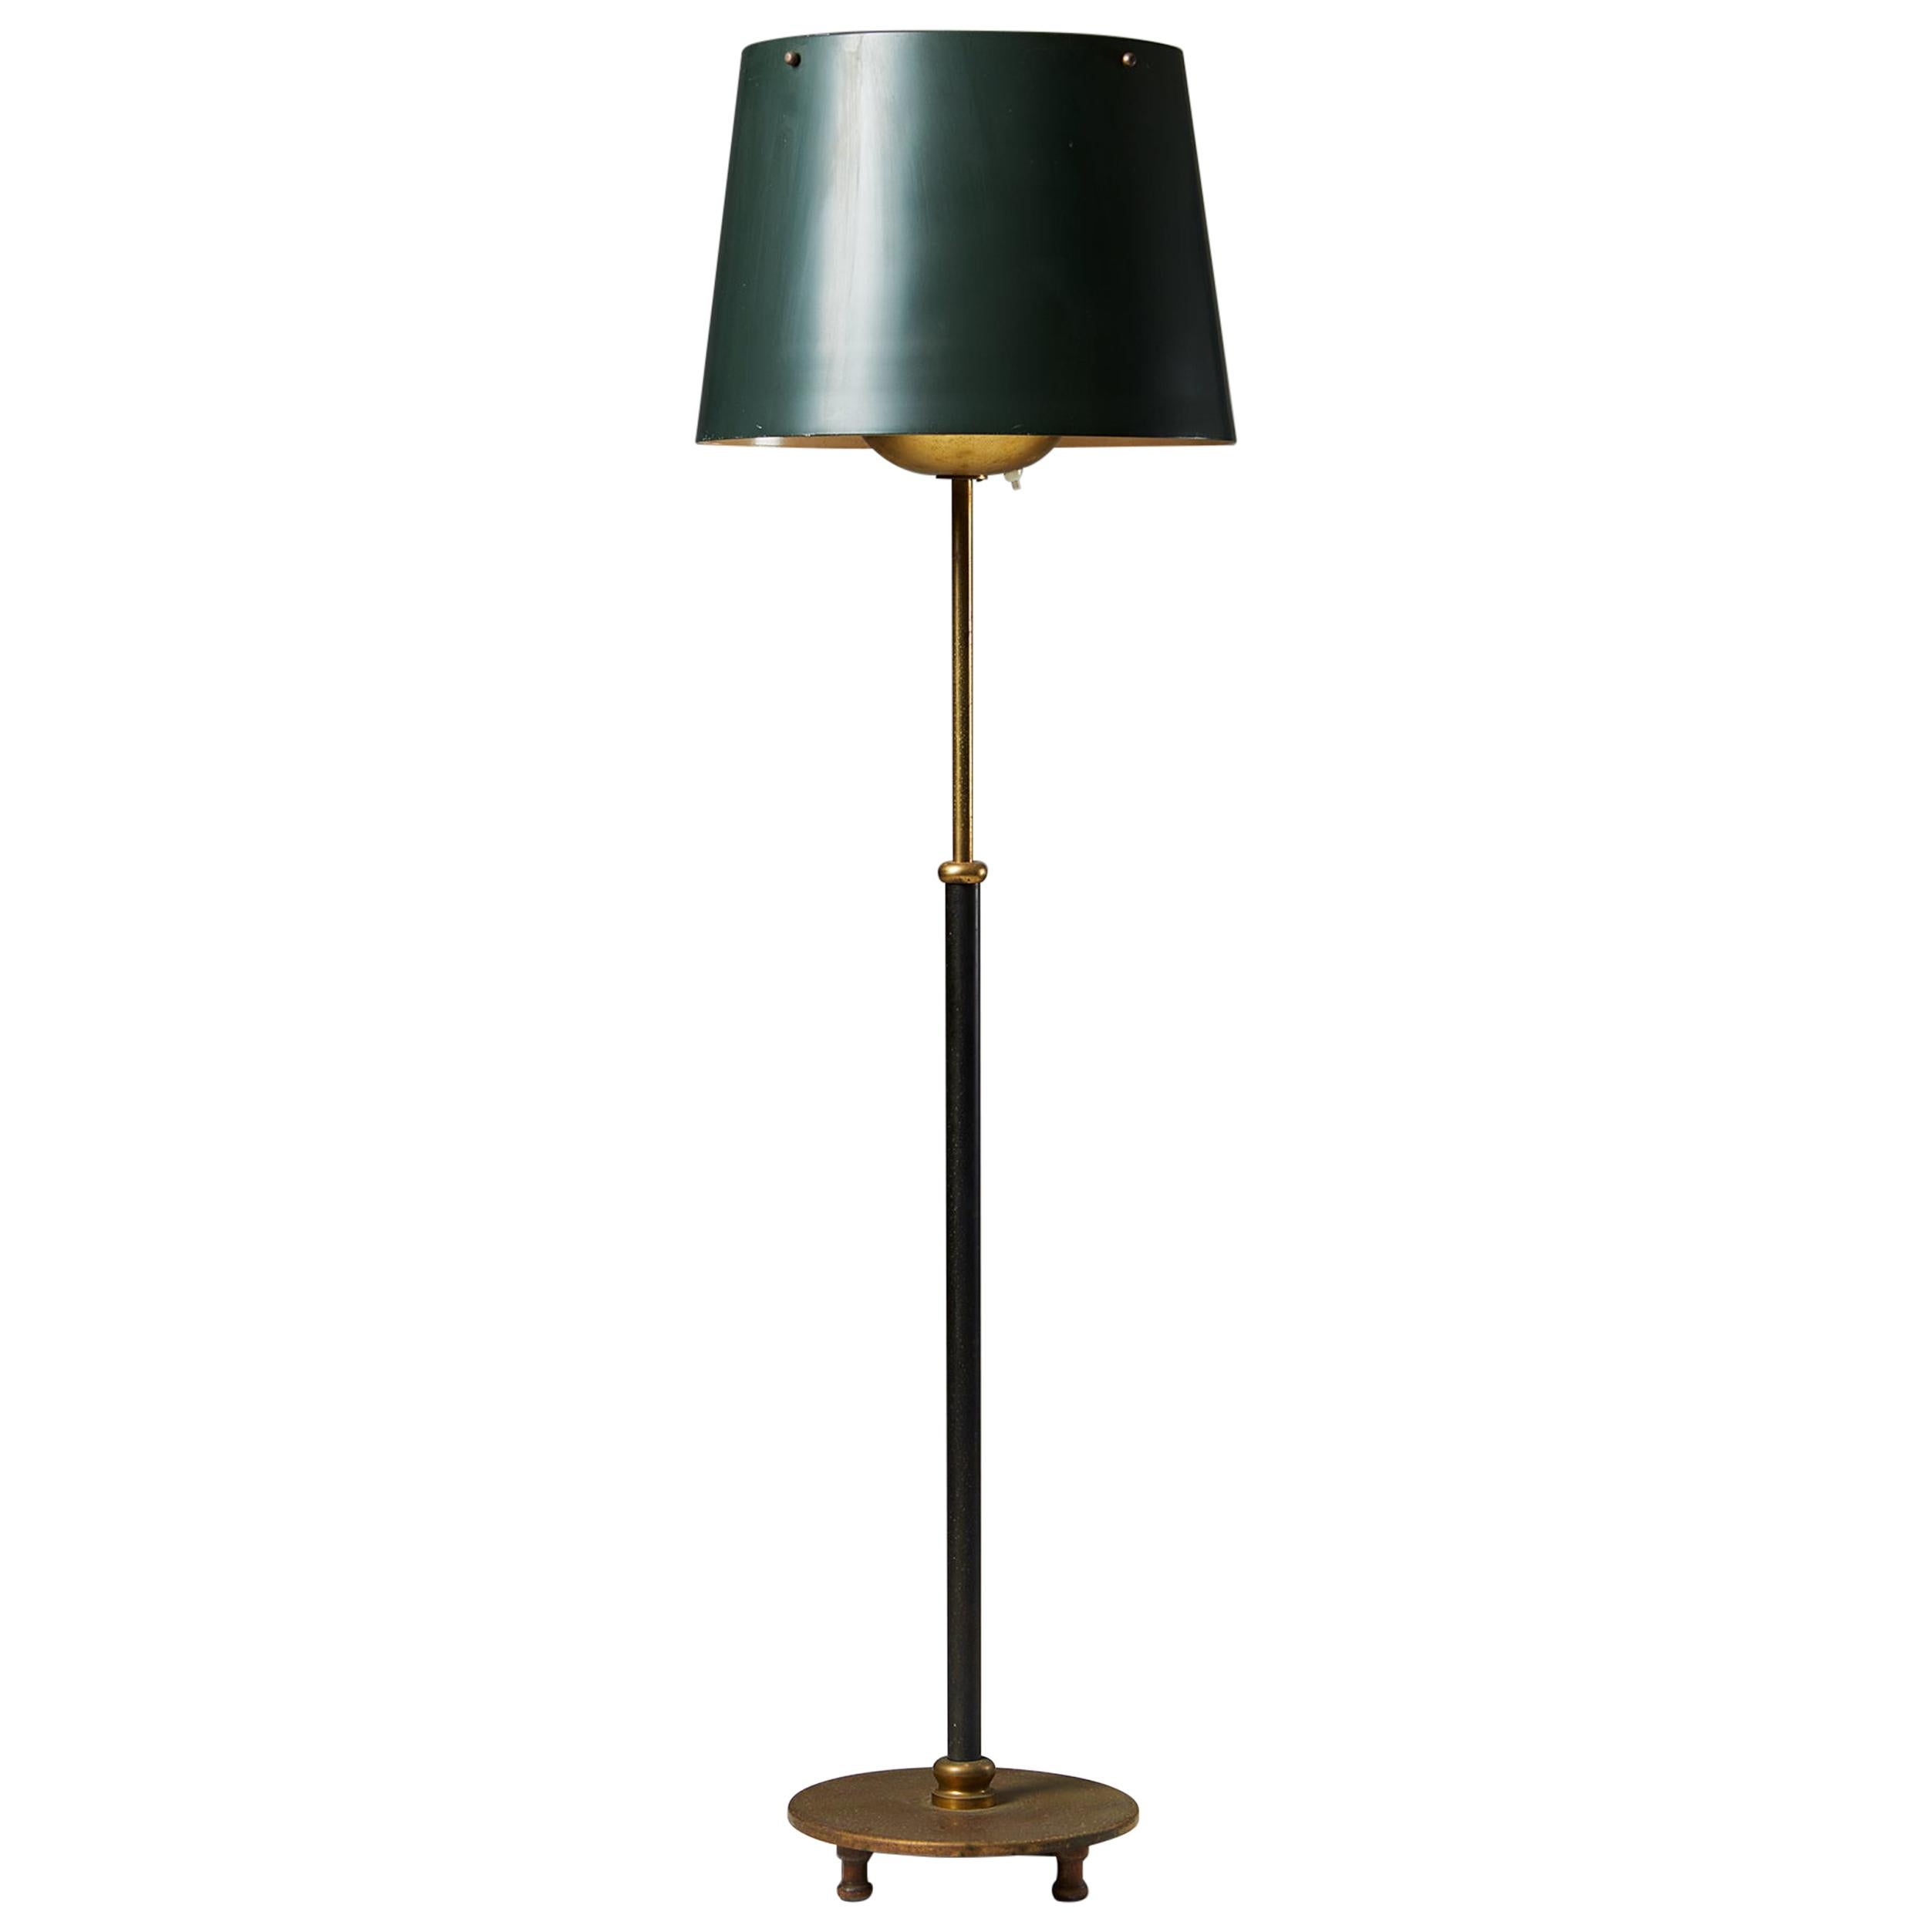 Floor Lamp Model 2564 Designed by Josef Frank for Svenskt Tenn, Sweden, 1950’s